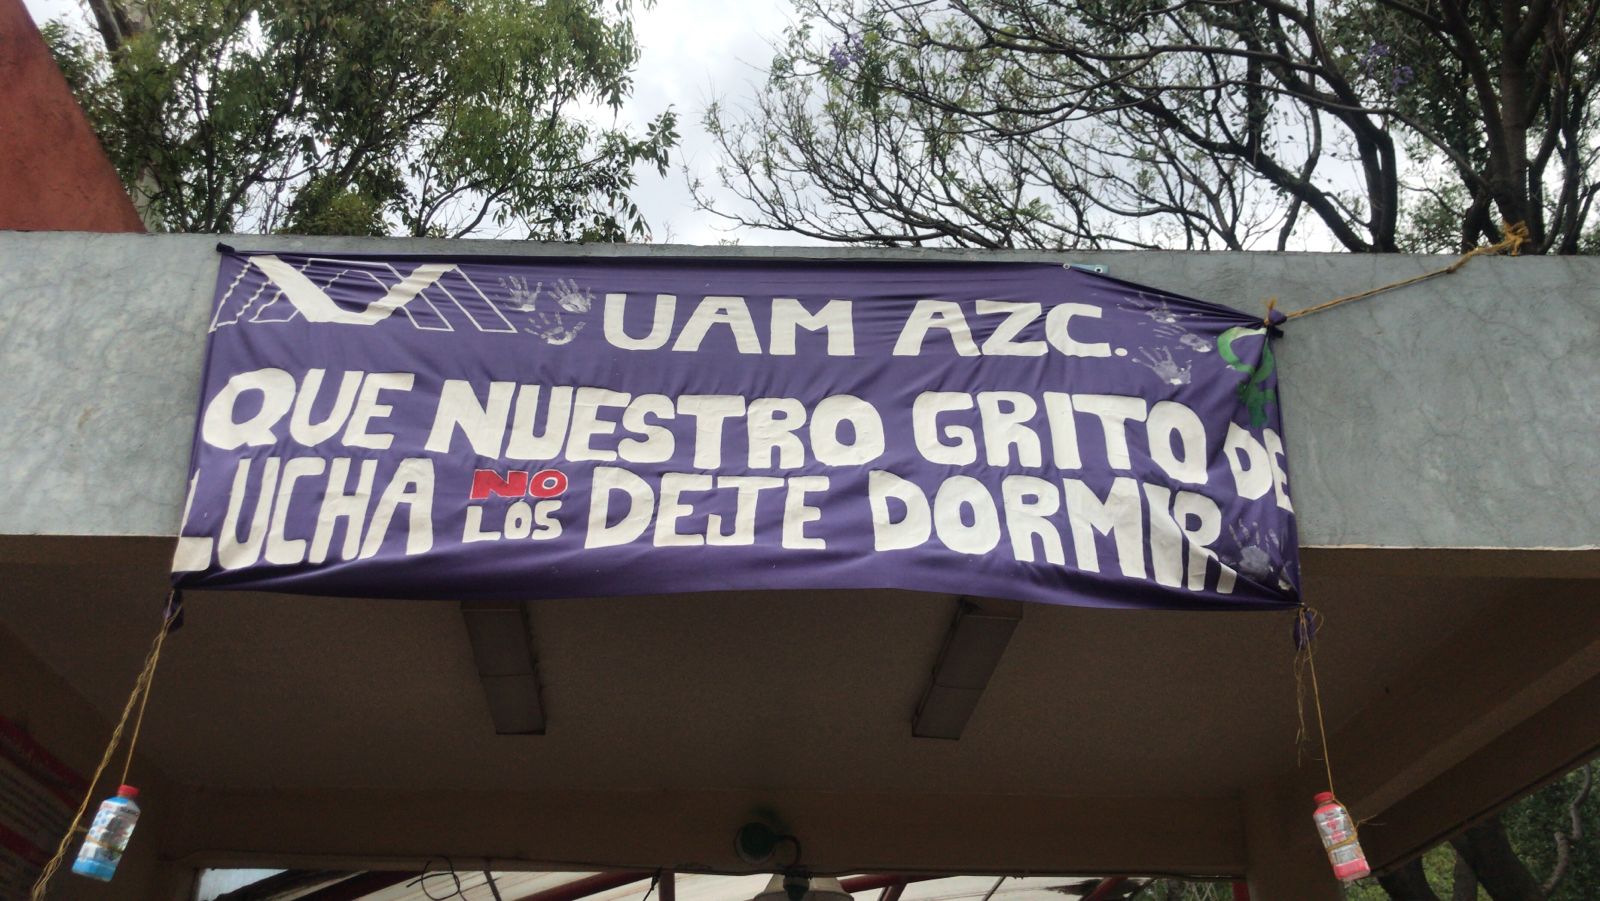 Tras recibir amenazas de porros, estudiantes en paro entregan sede de la UAM Azcapotzalco